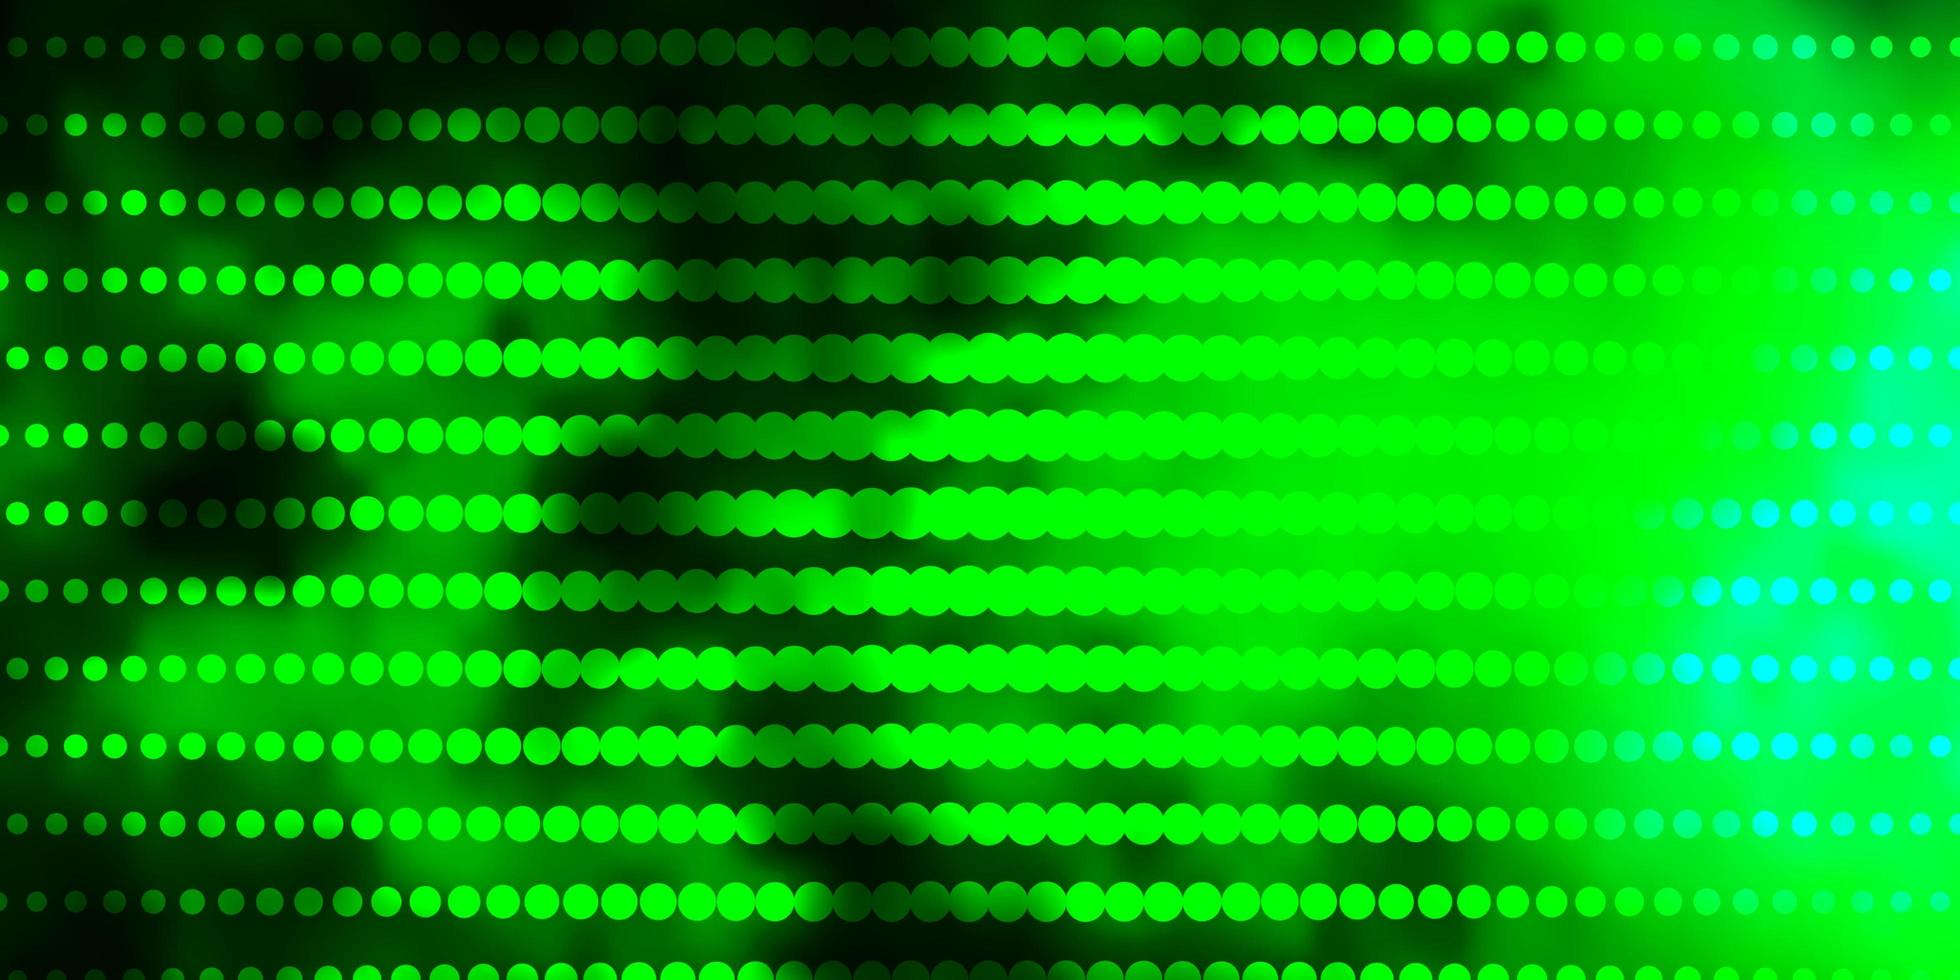 padrão de vetor azul, verde claro com círculos.